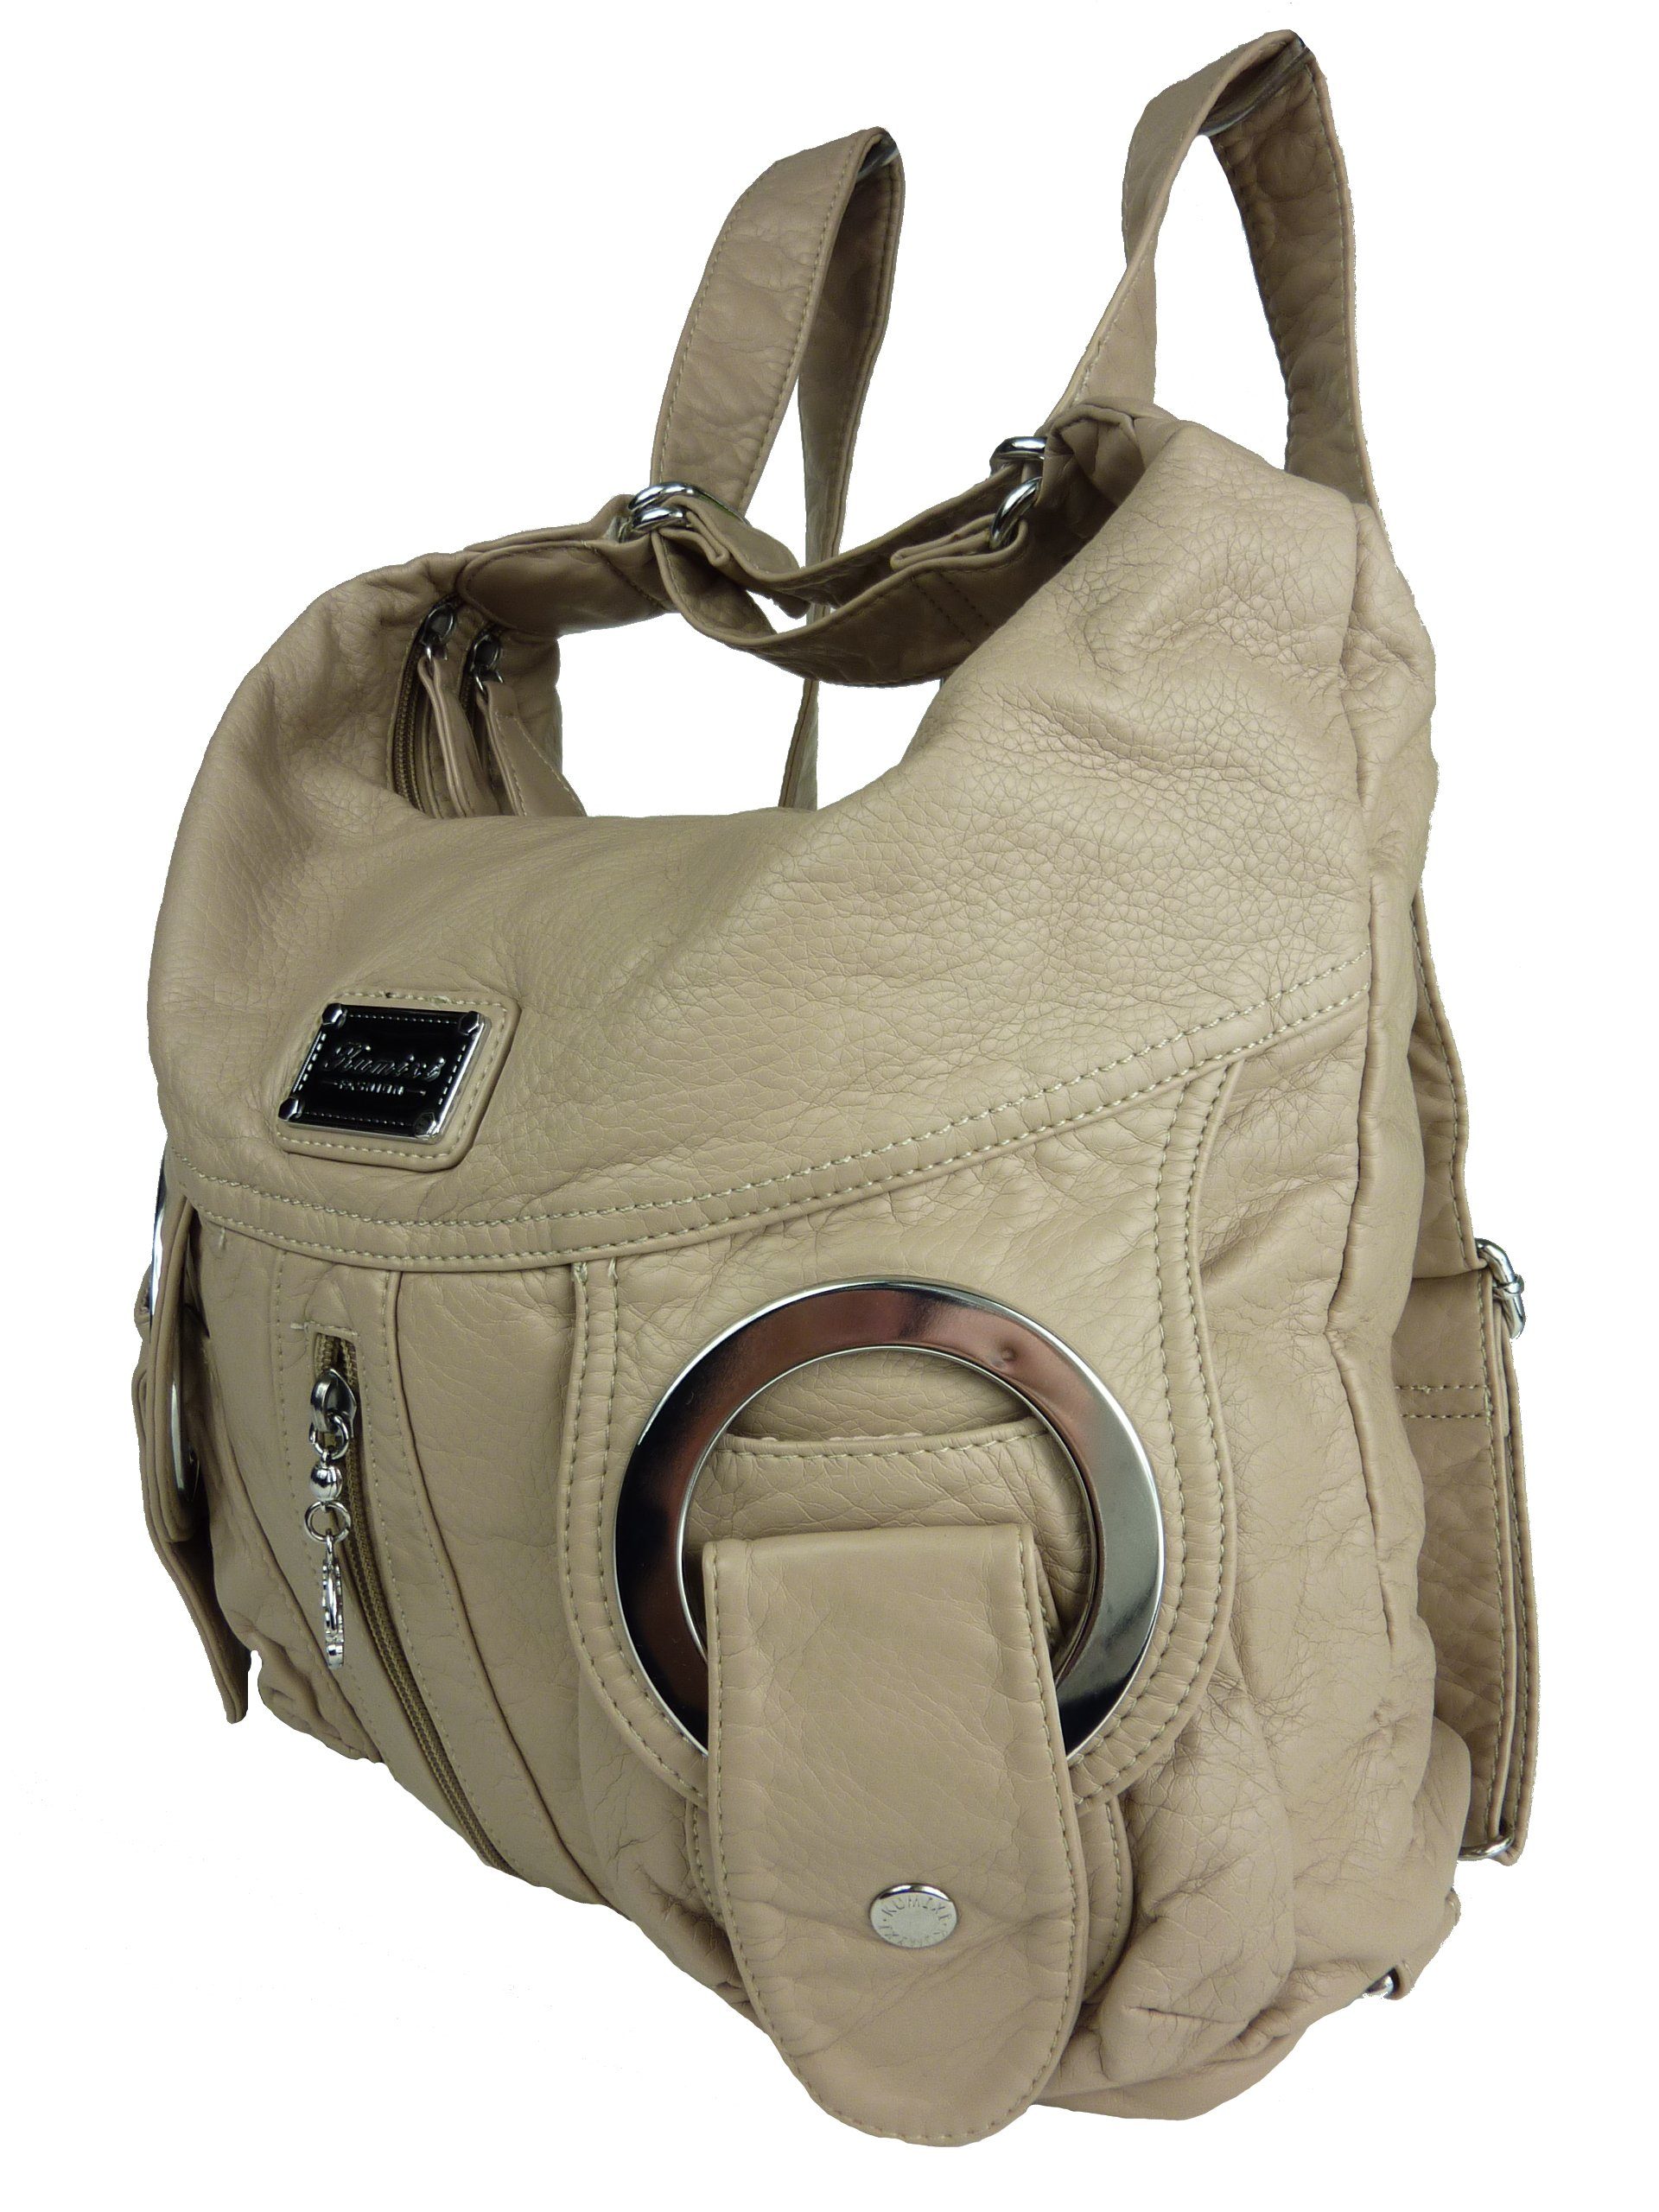 Taschen4life Schultertasche Rucksacktasche W6802 Multifunktionstasche, Tasche oder Rucksack, verstellbarer Schulterriemen, als Schultertasche oder Rucksack tragbar aprikot | Schultertaschen